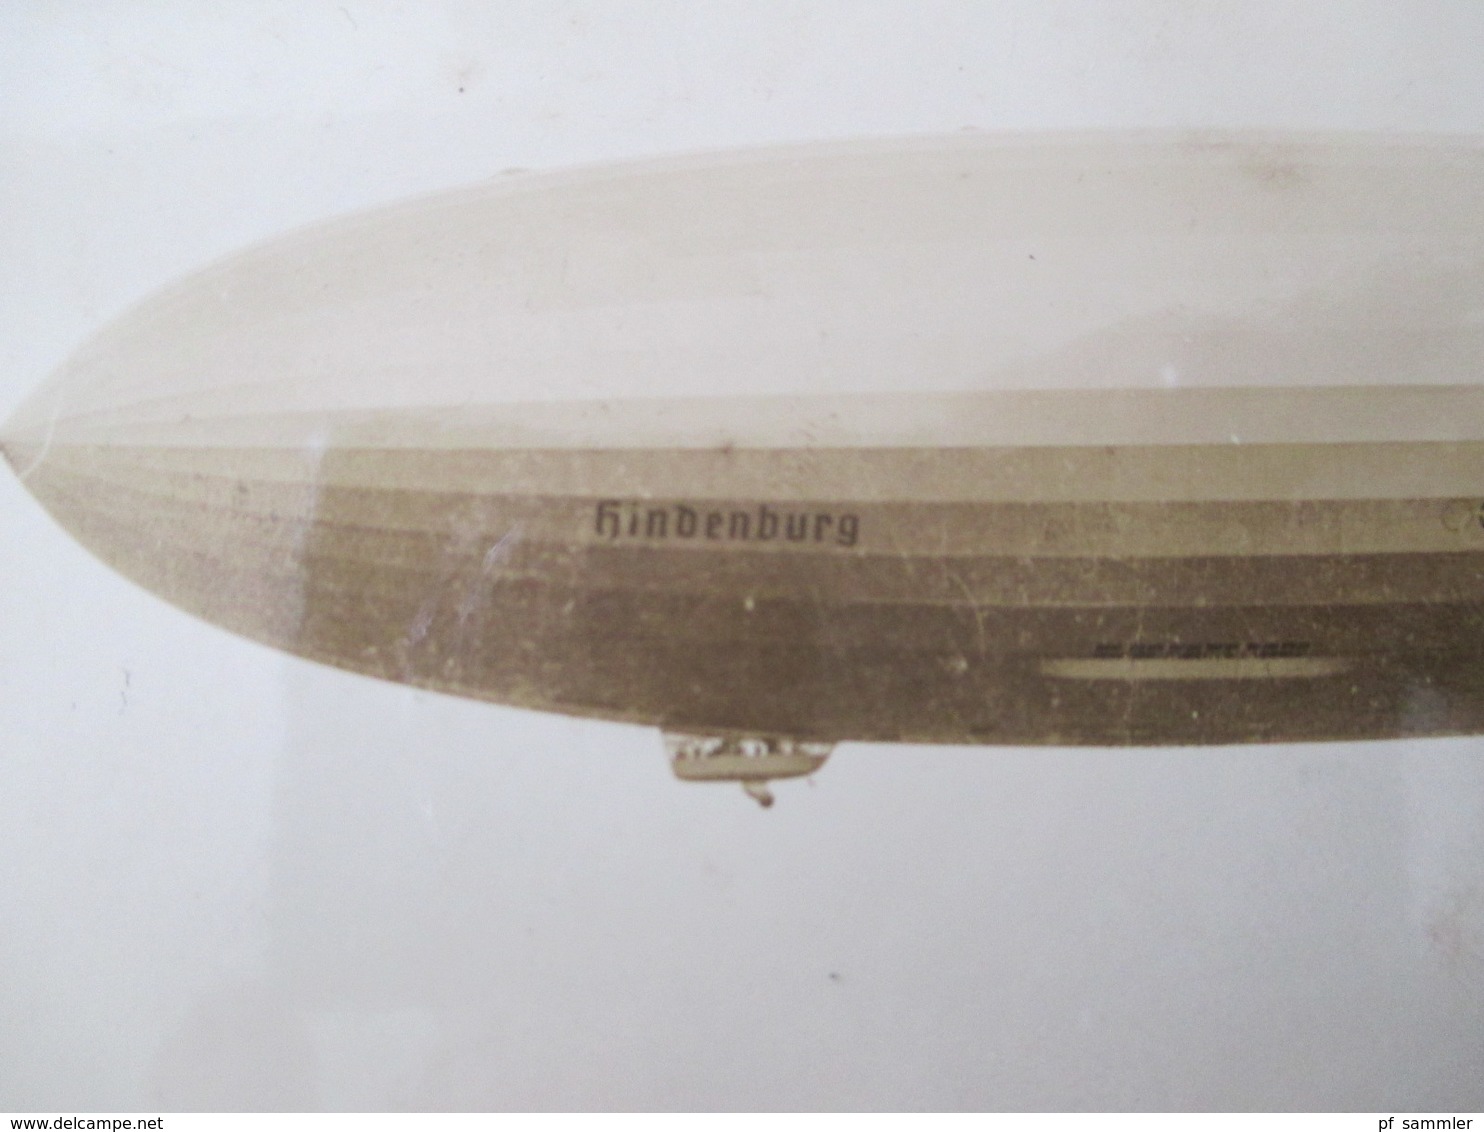 Echtfoto 1936 AK The Hindenburg D-LZ 129 N.A.S. Lakehurst N.J. Mit Stempel Flug Und Luftschiffhafen Rhein-Main Frankfurt - Zeppeline